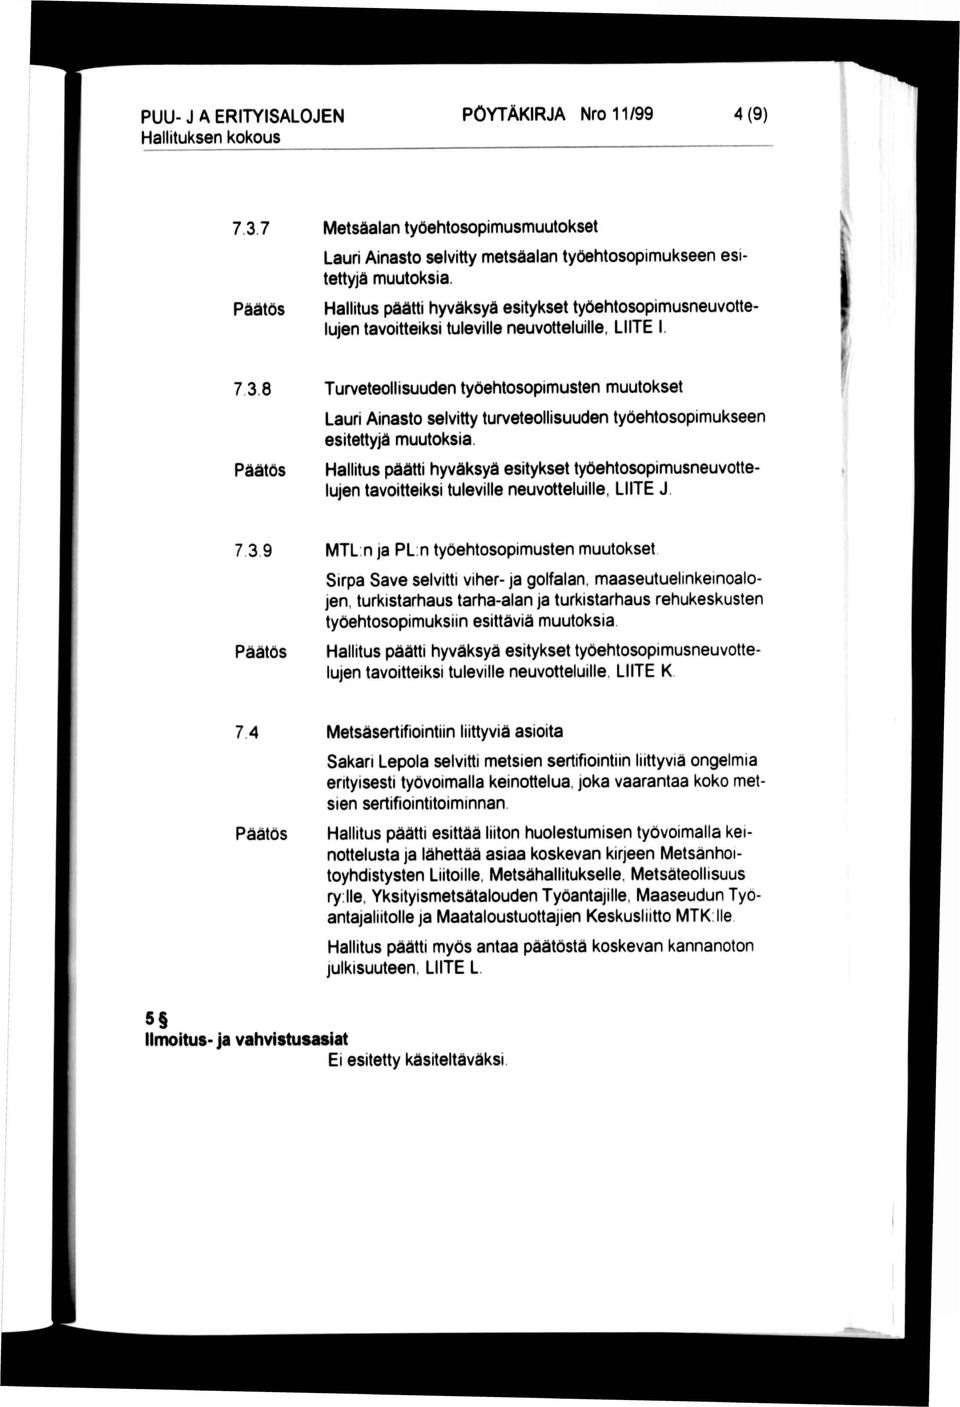 Turveteollisuuden työehtosopimusten muutokset Lauri Ainasto selvitty turveteollisuuden työehtosopimukseen esitettyjä muutoksia.